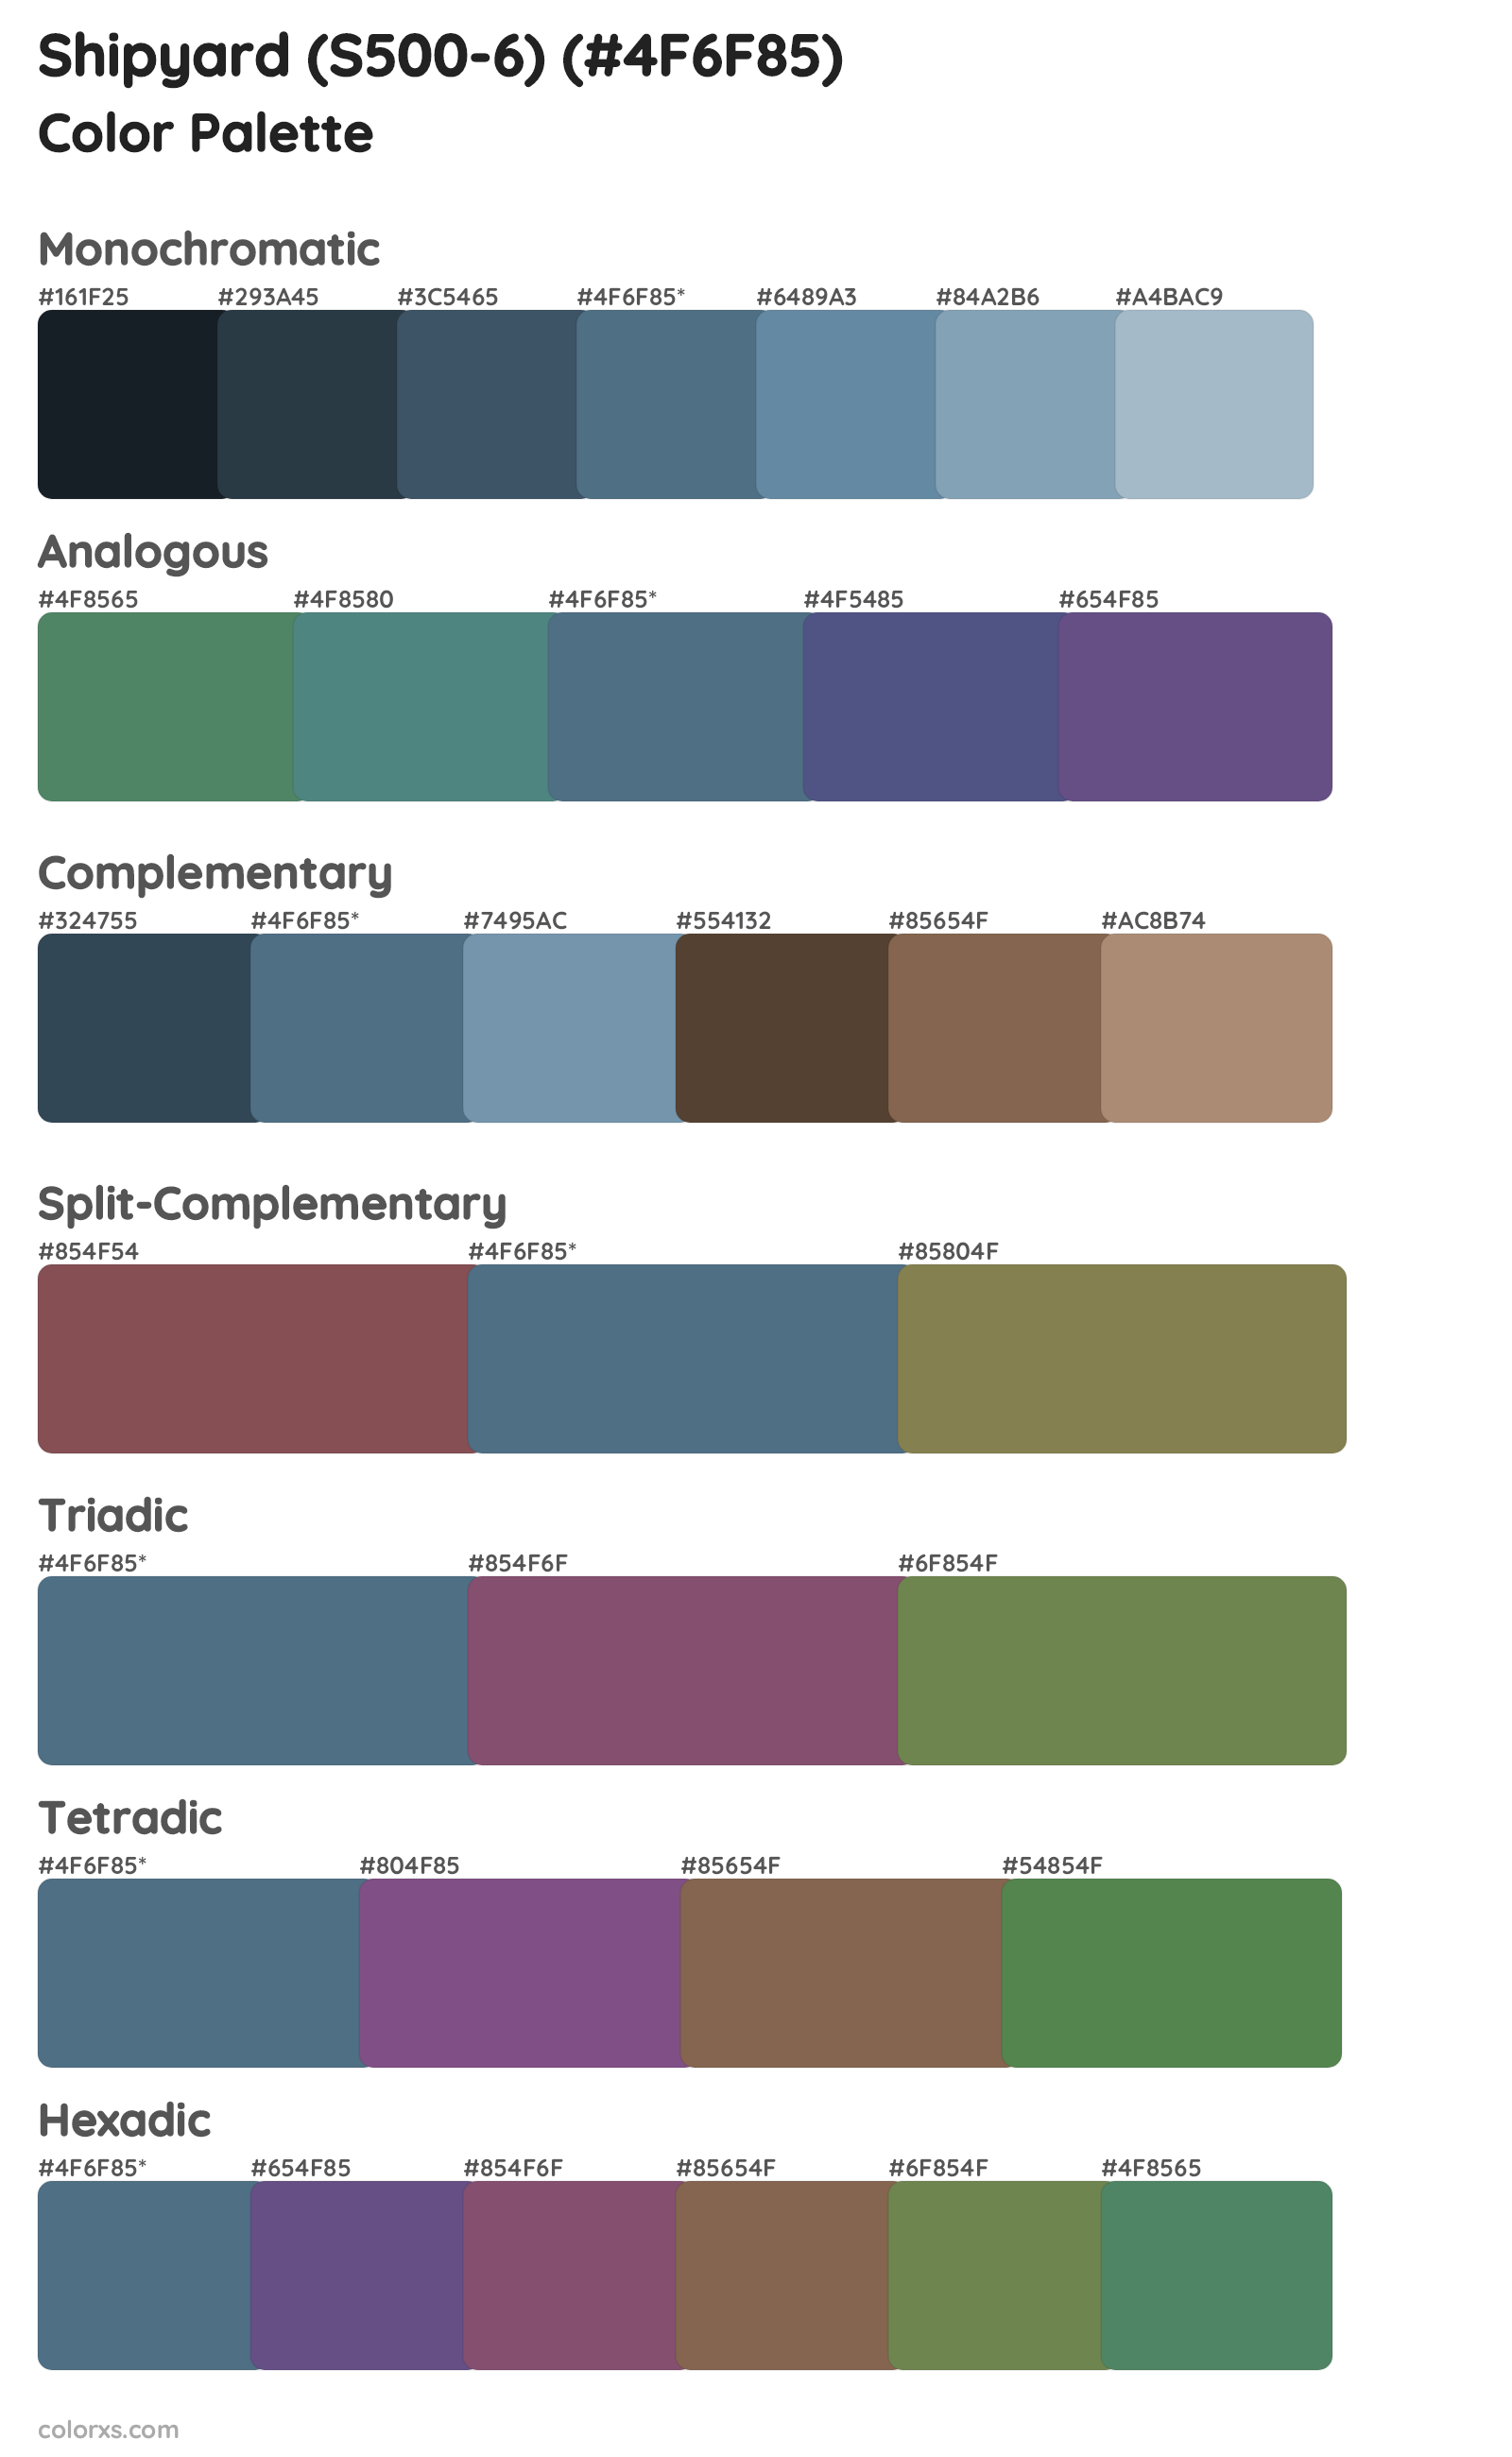 Shipyard (S500-6) Color Scheme Palettes